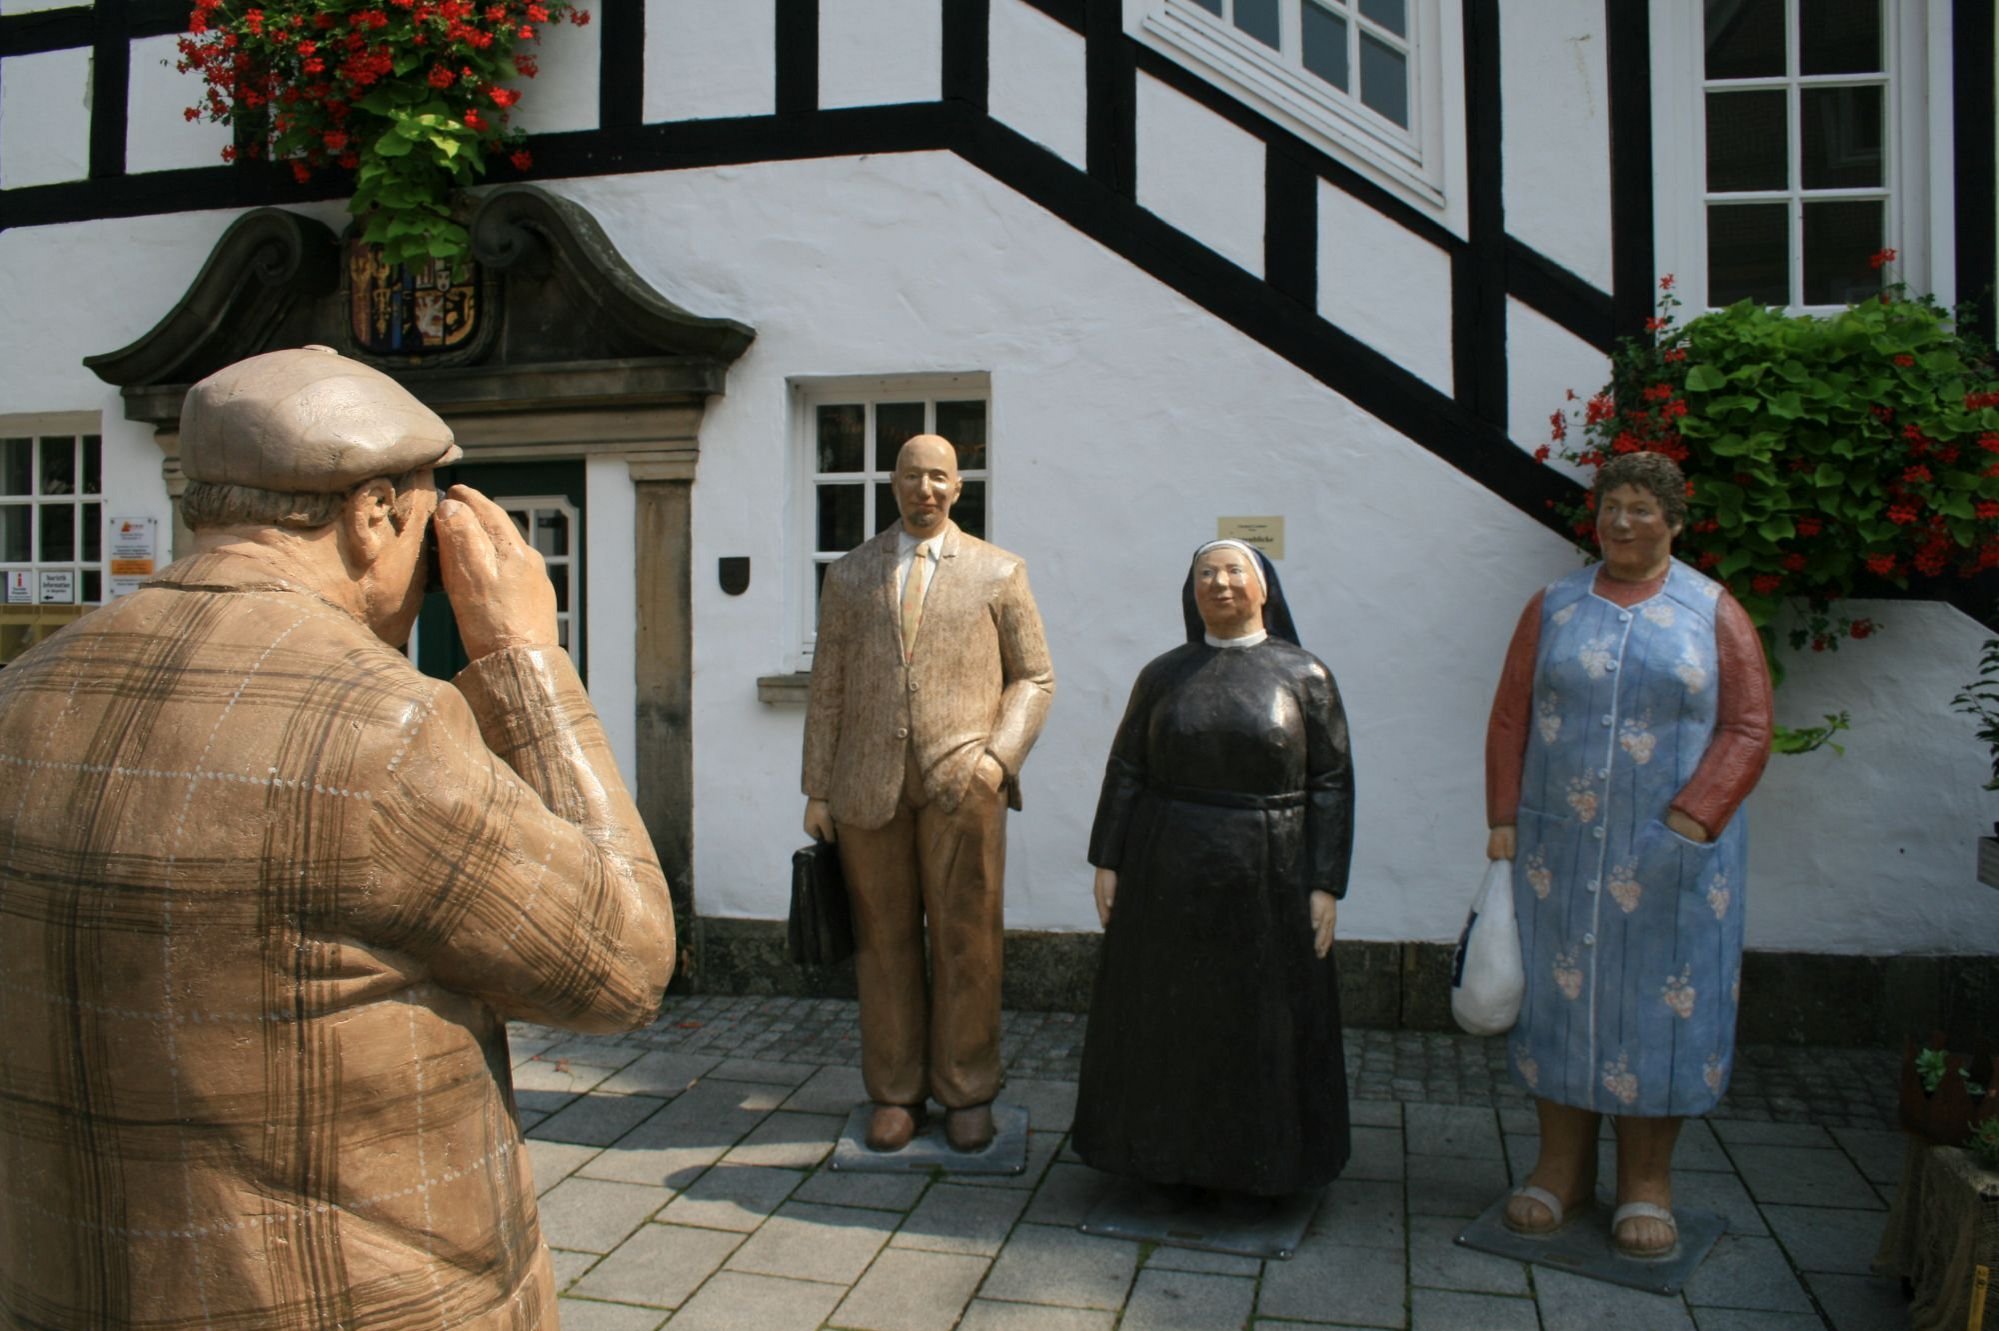 Die so genannten Alltagsmenschen vor dem Rathaus. Die Figurengruppe, geschaffen von der Künstlerin Christel Lechner, zeigt einen Geschäftsmann, eine Nonne und eine Hausfrau, die für einen Fotografen posieren.